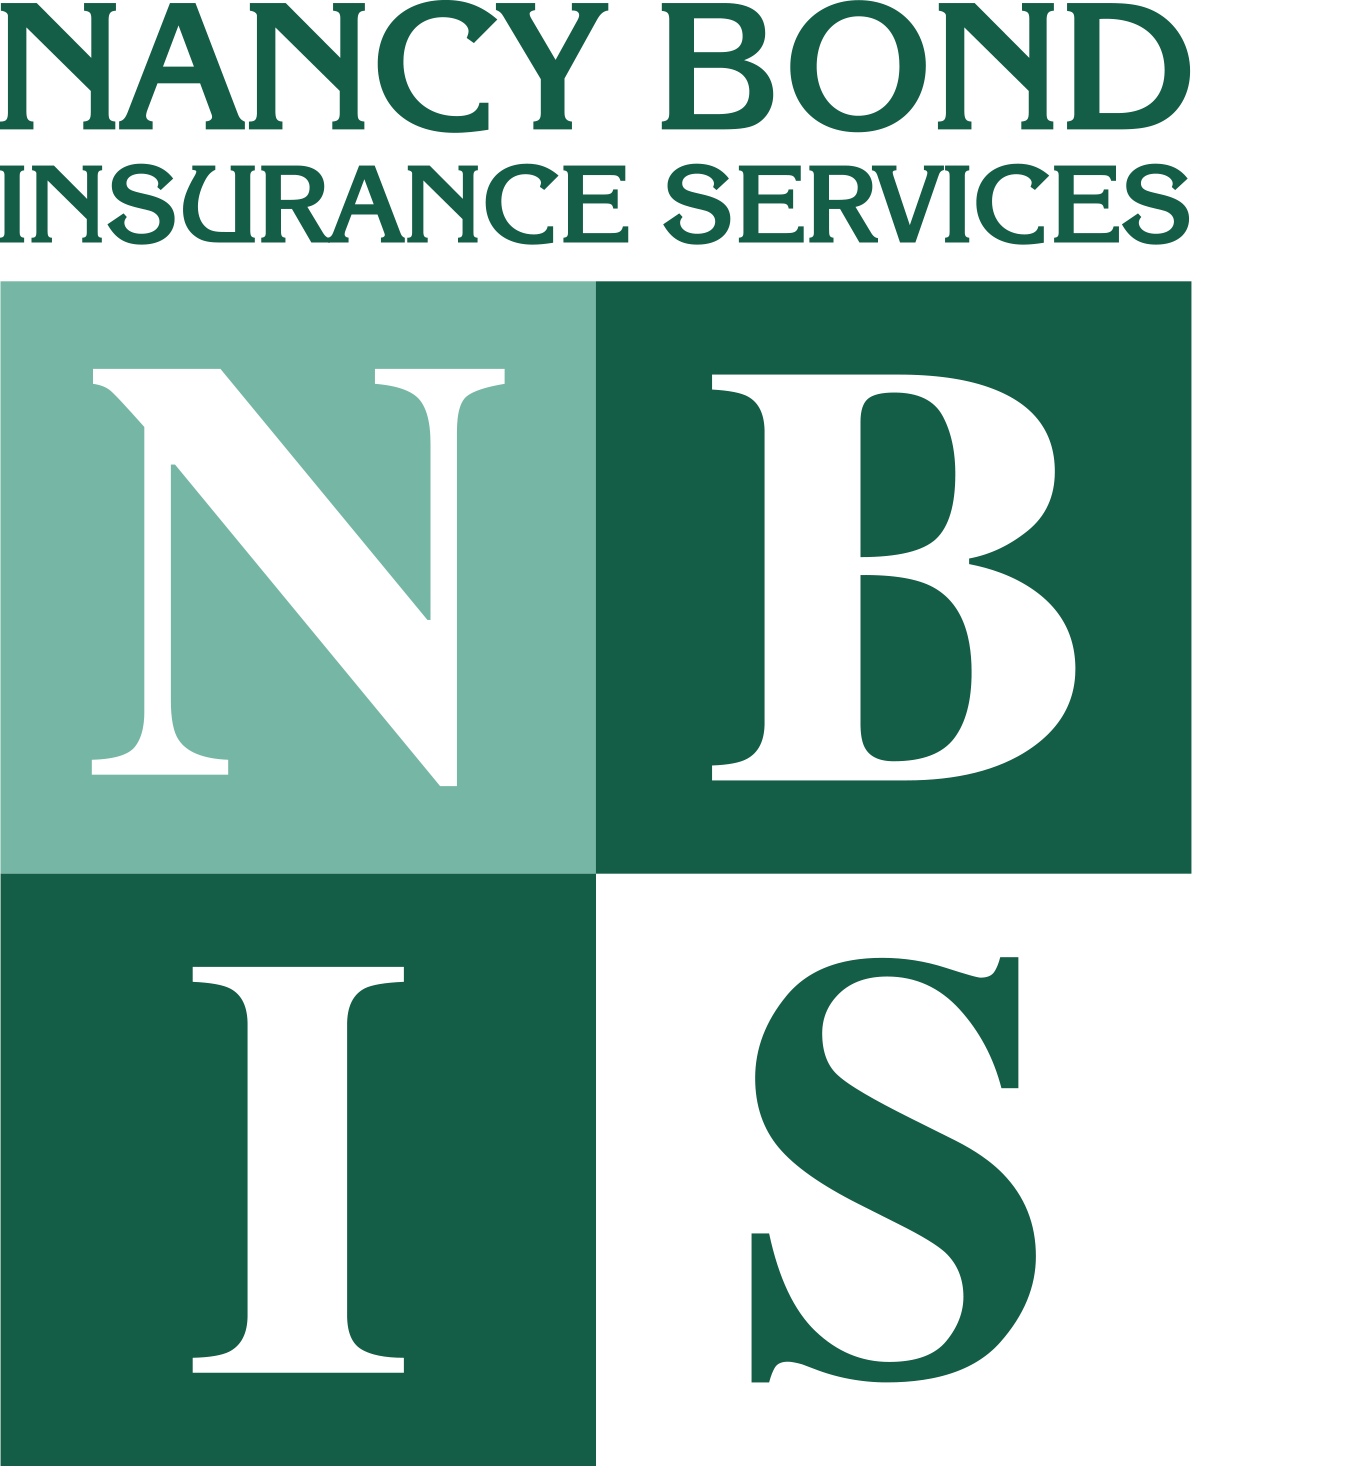 Nancy Bond Insurance Services